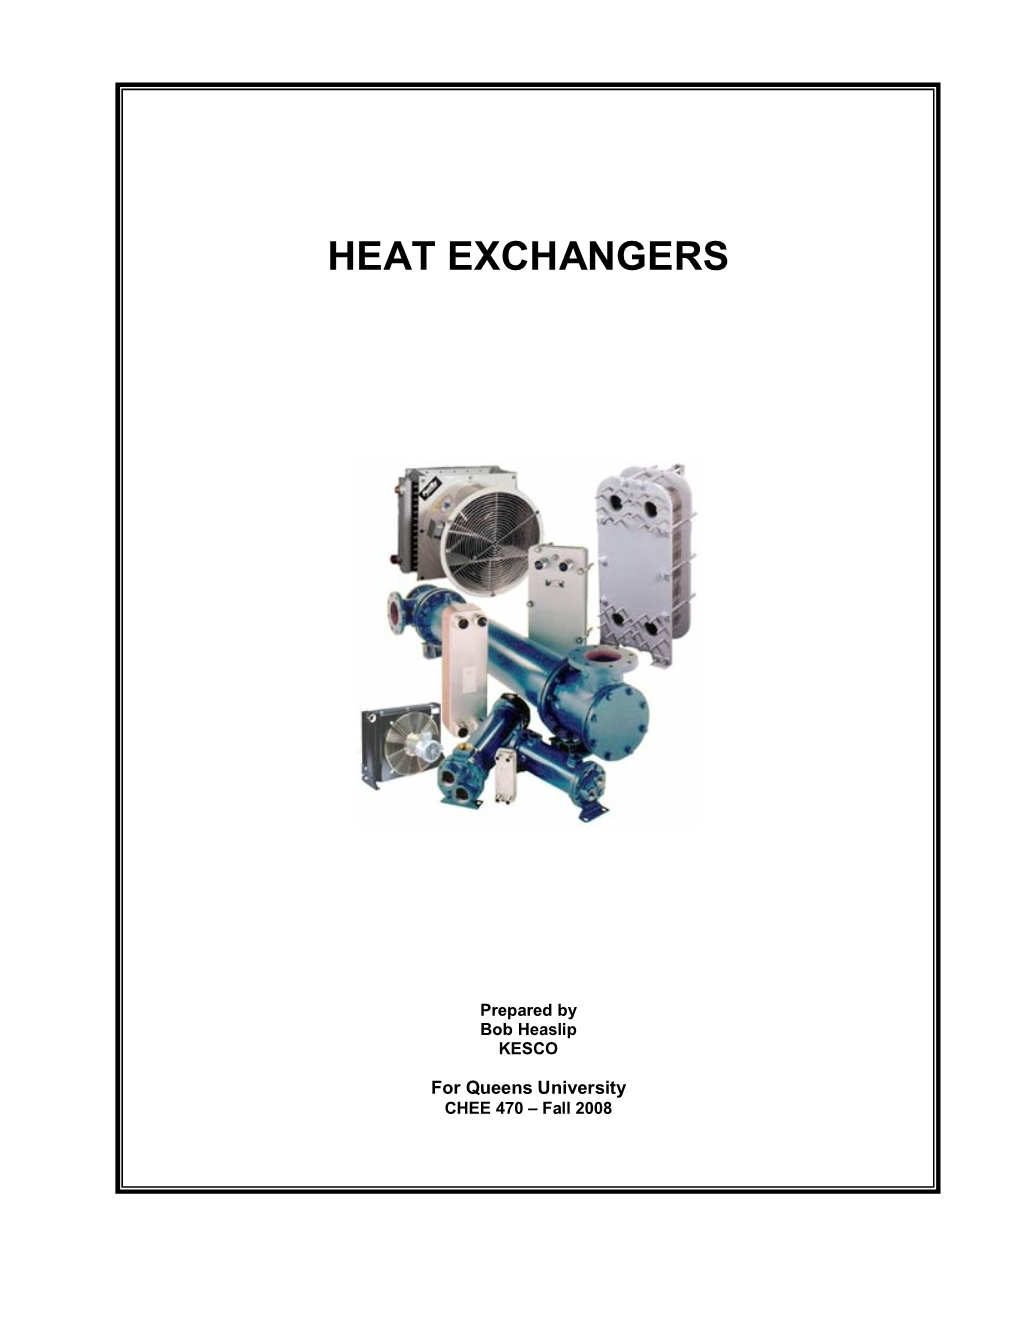 CHEE 470 Heat Exchangers 2008